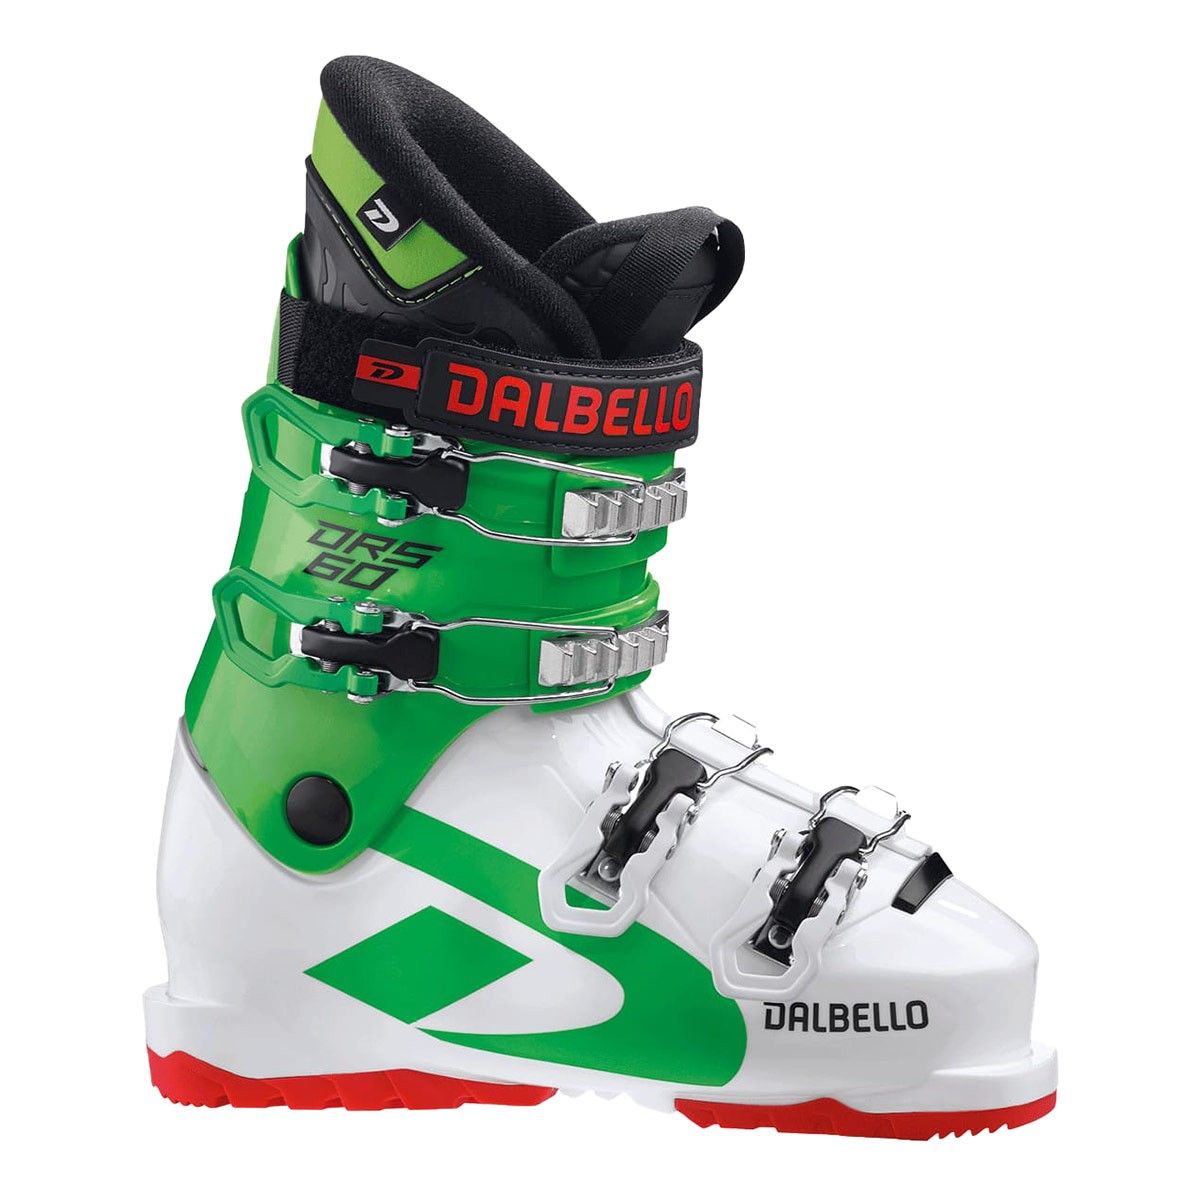  Scarponi sci Dalbello DRS 60 Junior (Colore: white-race green, Taglia: 24) 